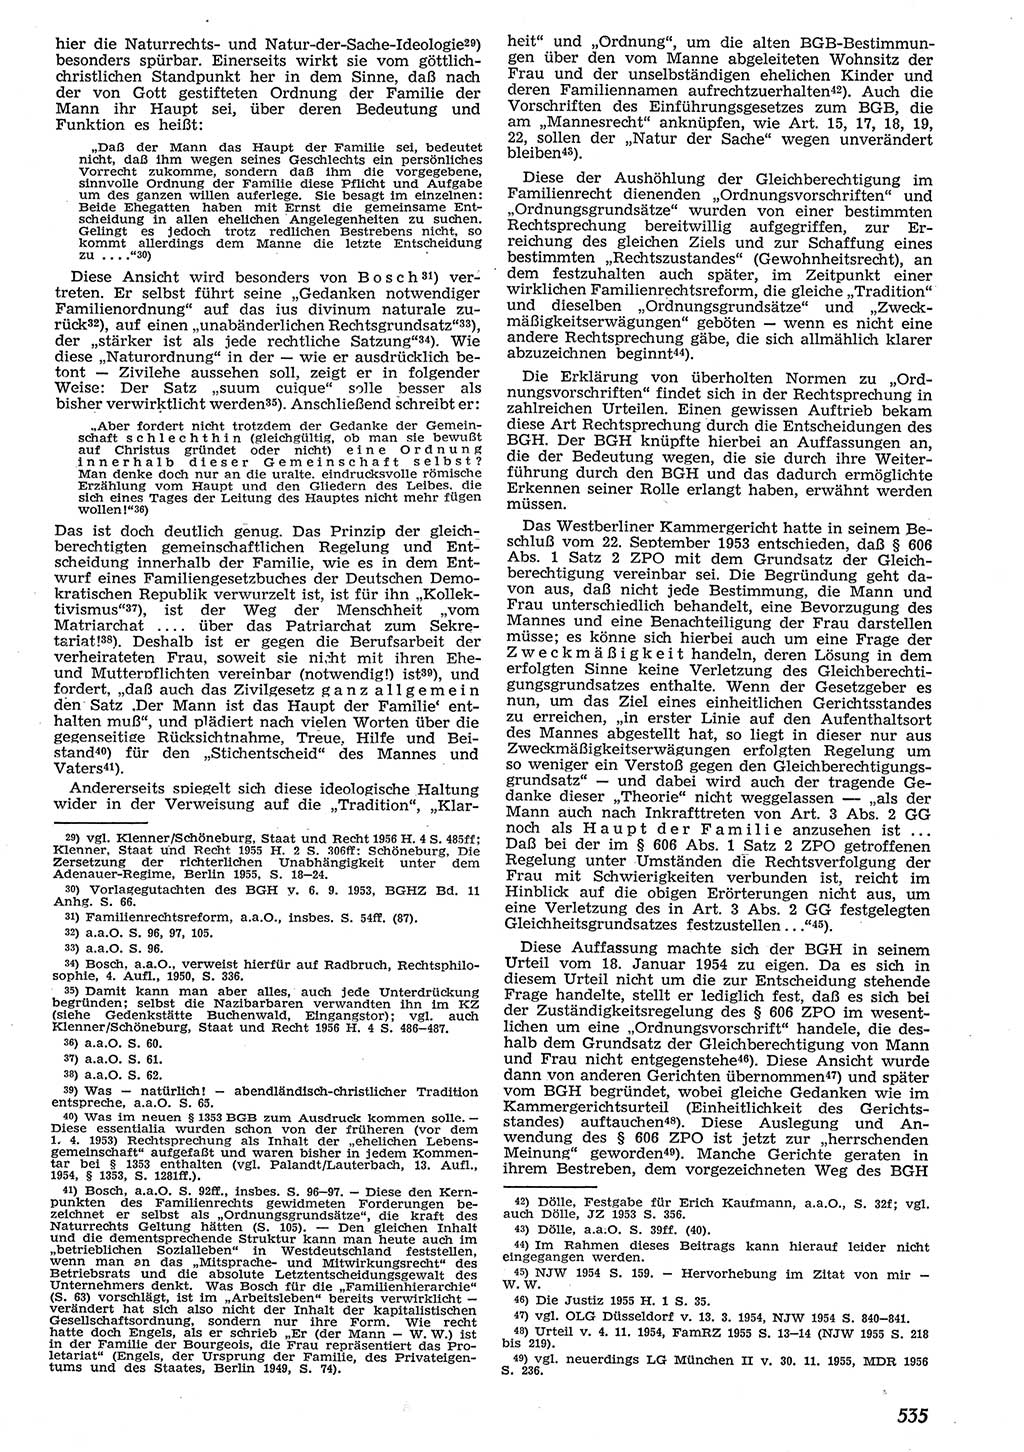 Neue Justiz (NJ), Zeitschrift für Recht und Rechtswissenschaft [Deutsche Demokratische Republik (DDR)], 10. Jahrgang 1956, Seite 535 (NJ DDR 1956, S. 535)